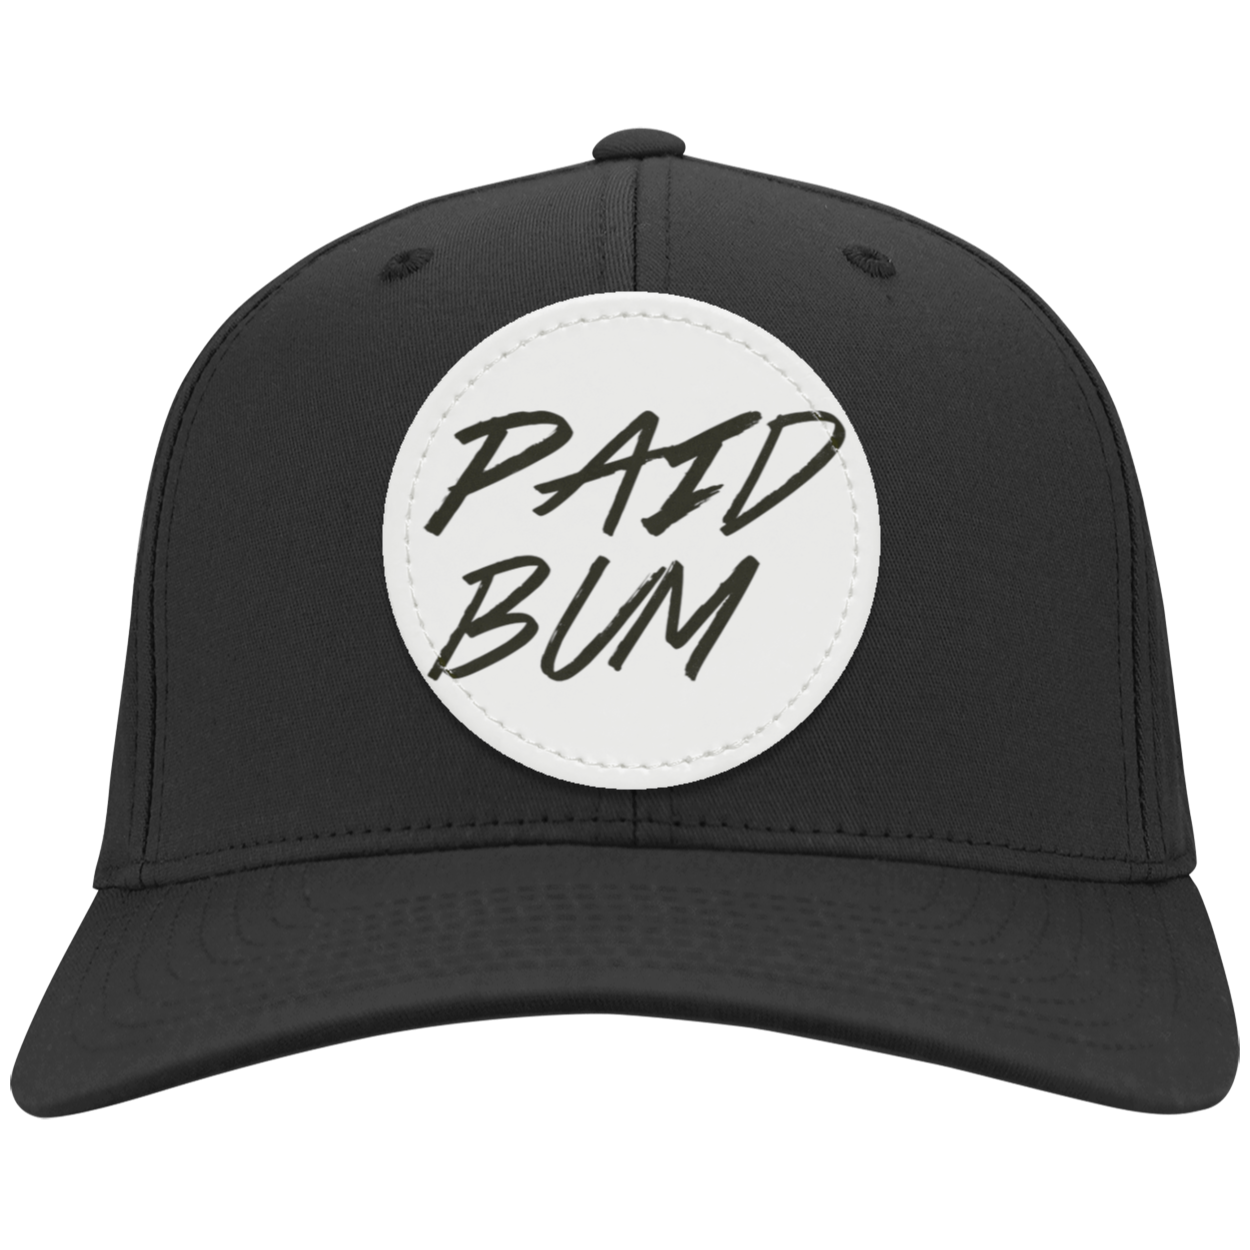 Paid Bum Hat #1